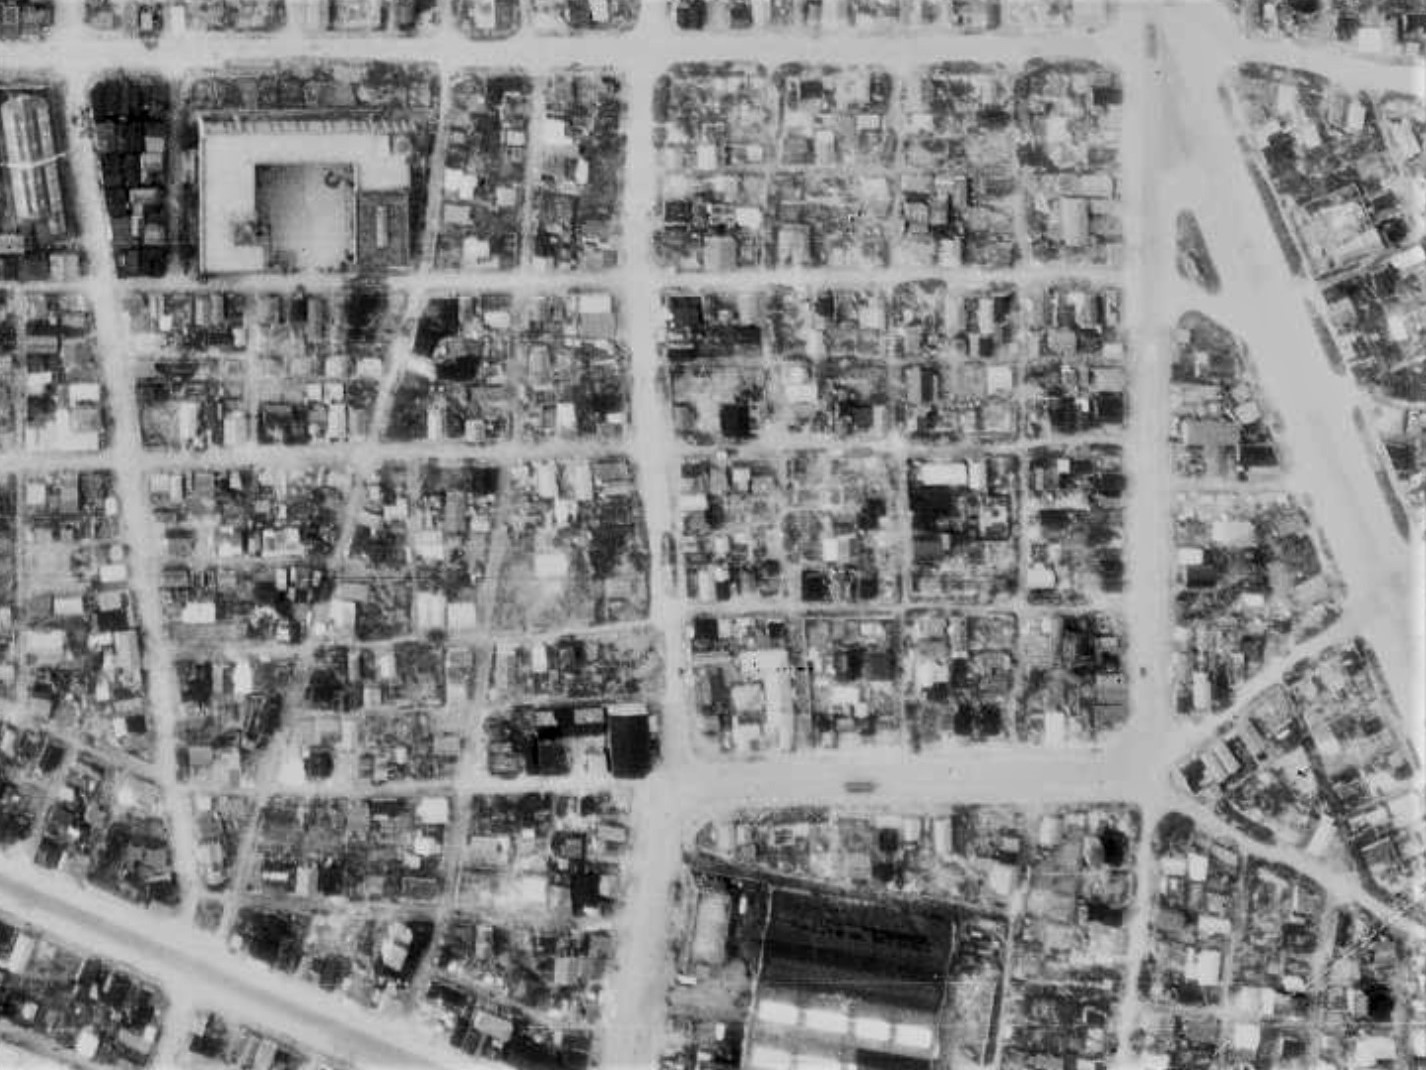 柳川藩下屋敷付近、昭和22年撮影空中写真（国土地理院Webサイトより、USA-M372-46〔部分〕） の画像。